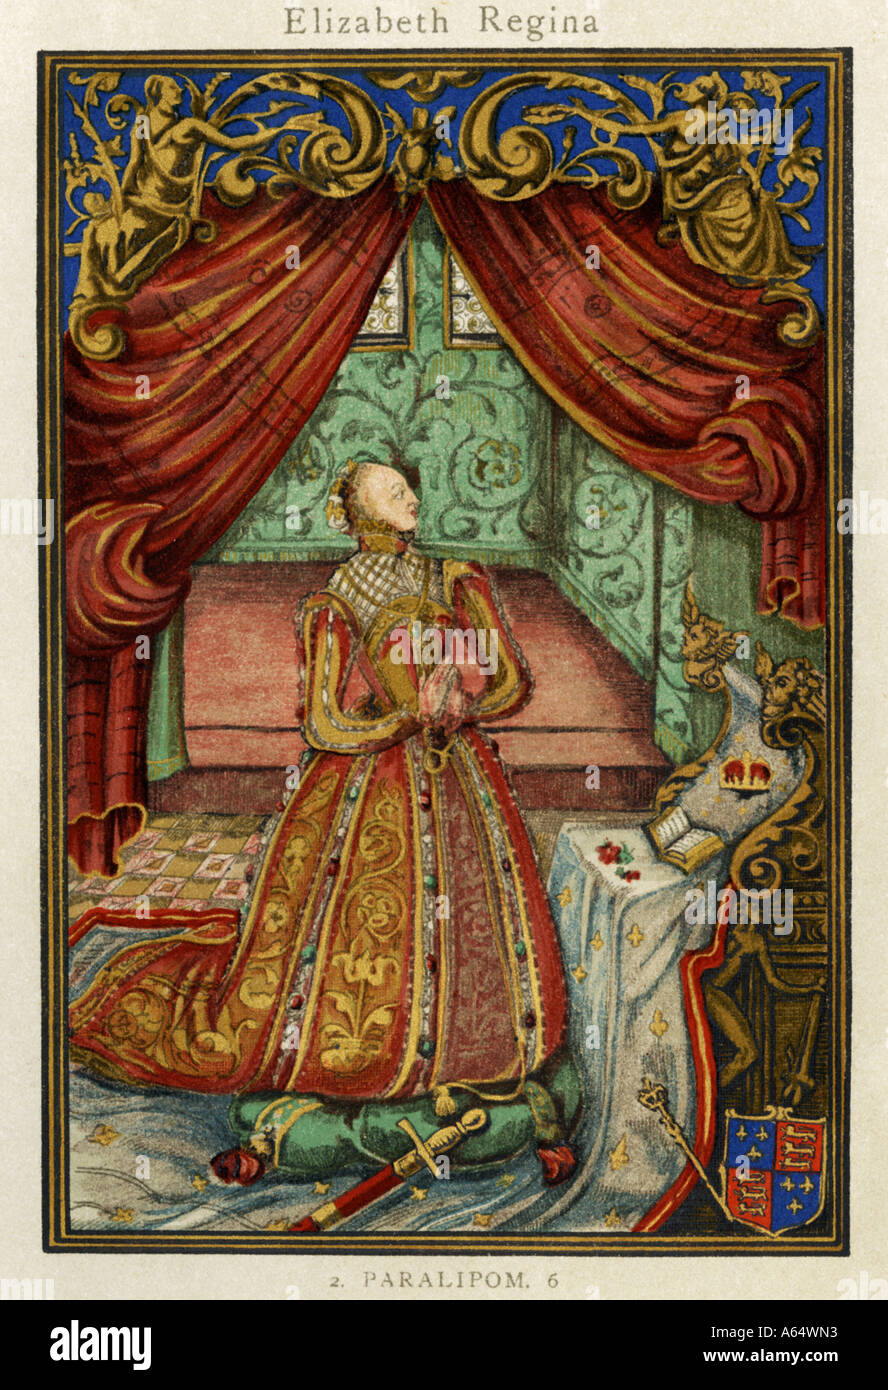 La reine Elizabeth au frontispice de prière prières chrétienne 1569. Lithographie couleur Banque D'Images